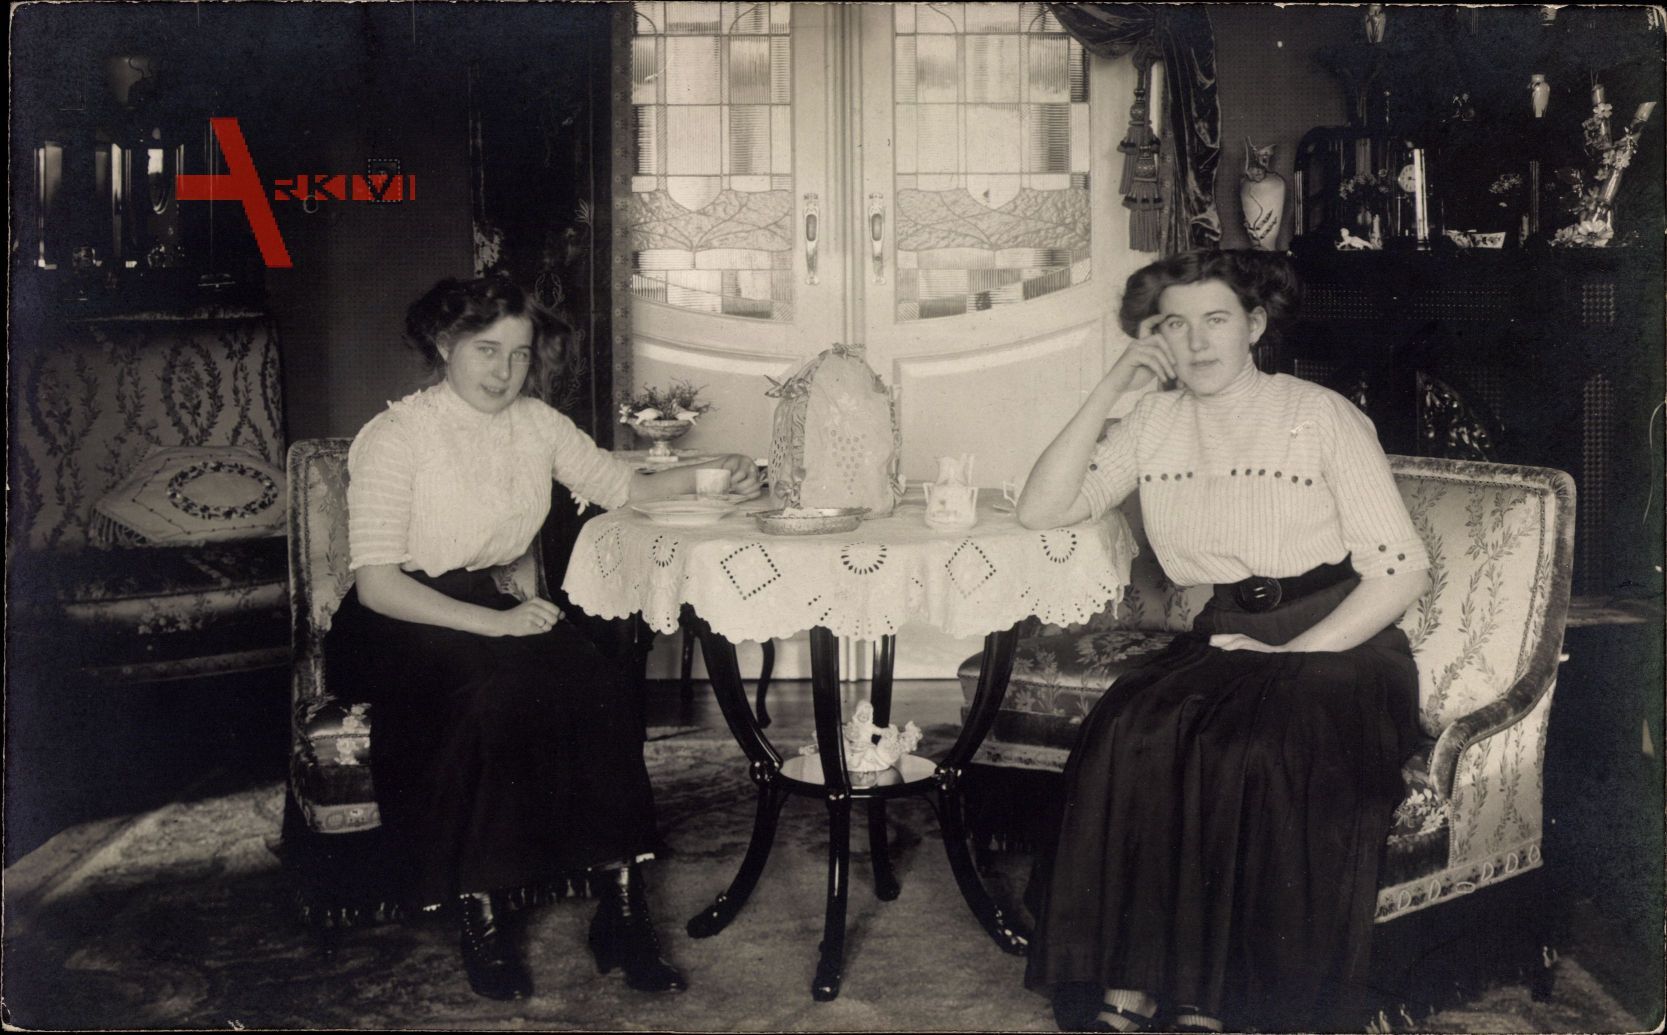 Zwei junge Frauen am Tisch sitzend, Jugendstil Möbel